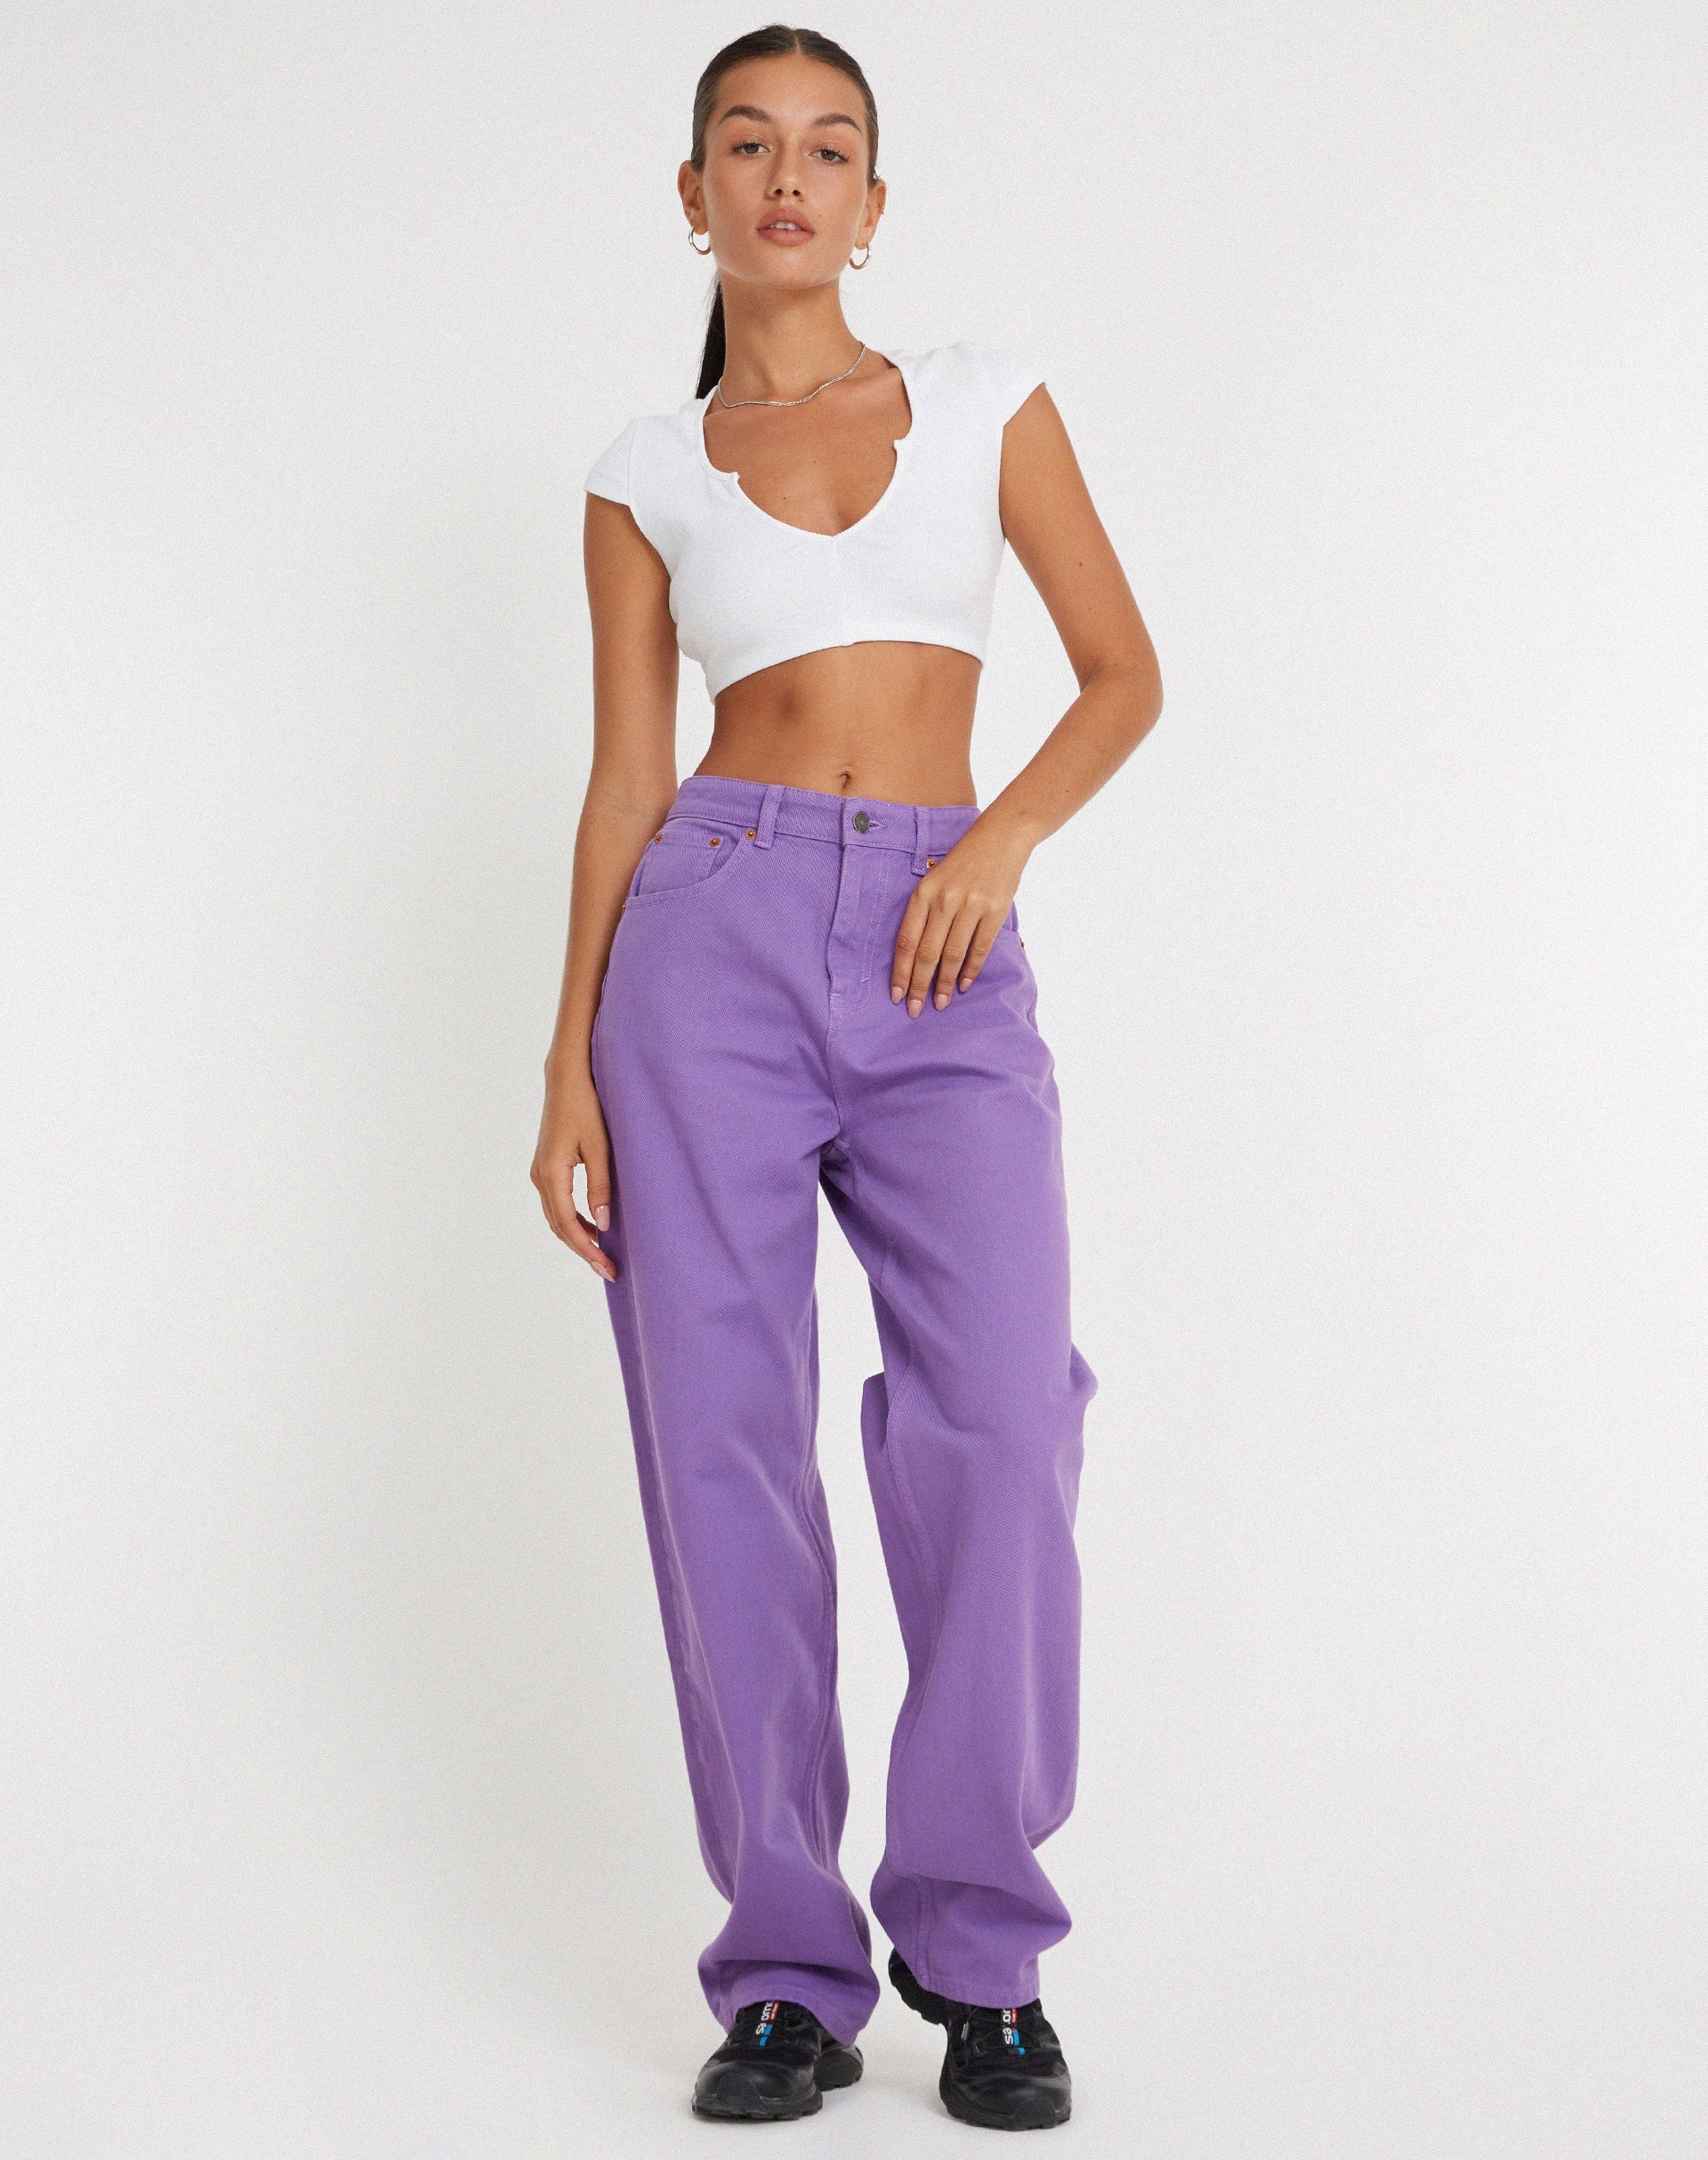 Parallel Jeans in Purple